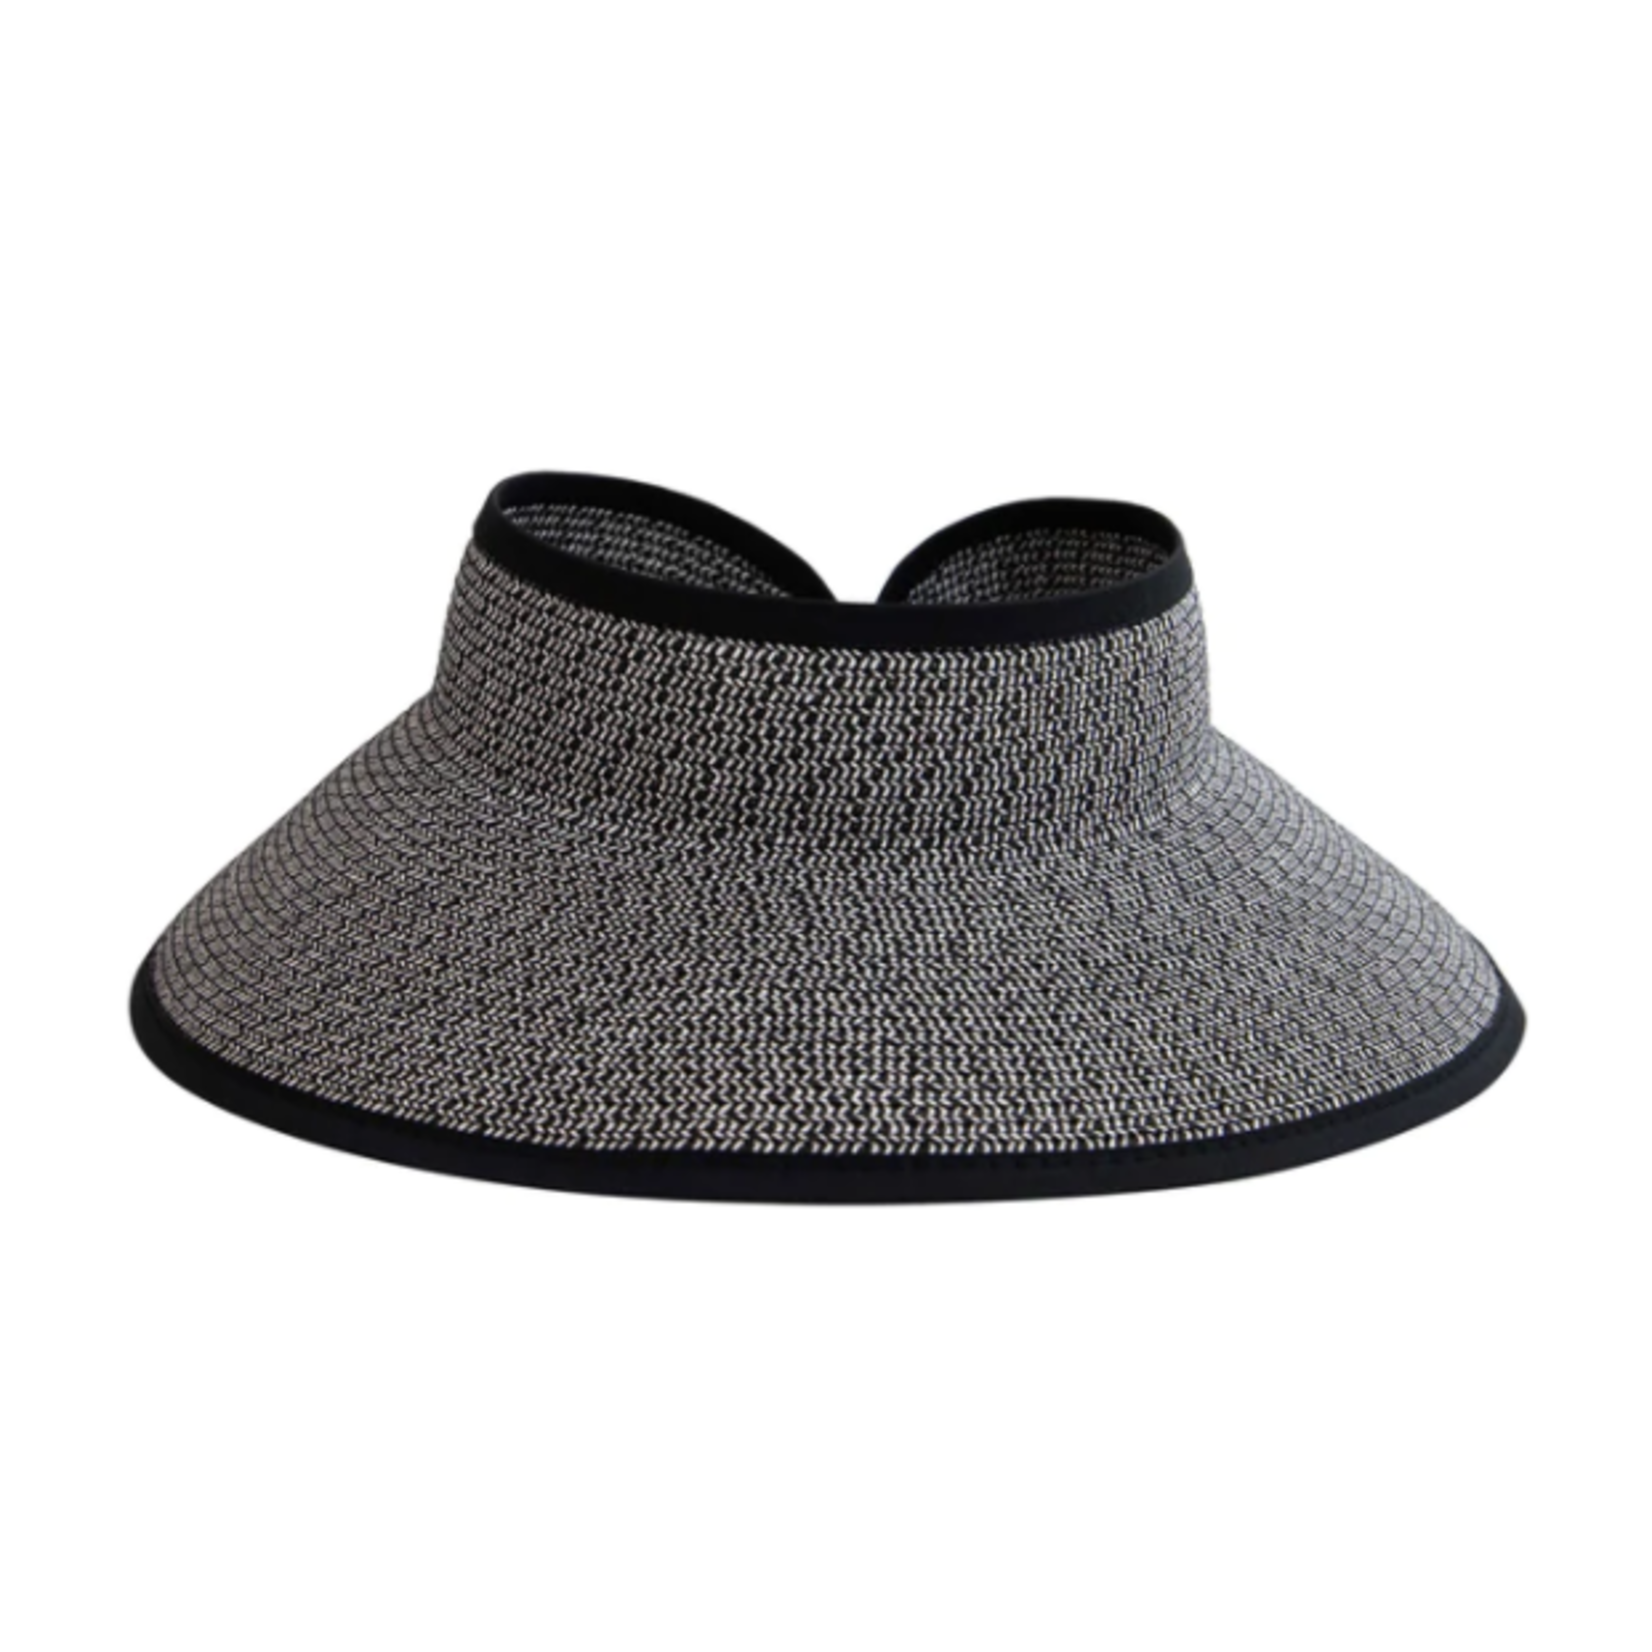 Ultrabraid Large Brim Visor Hat in Black/White